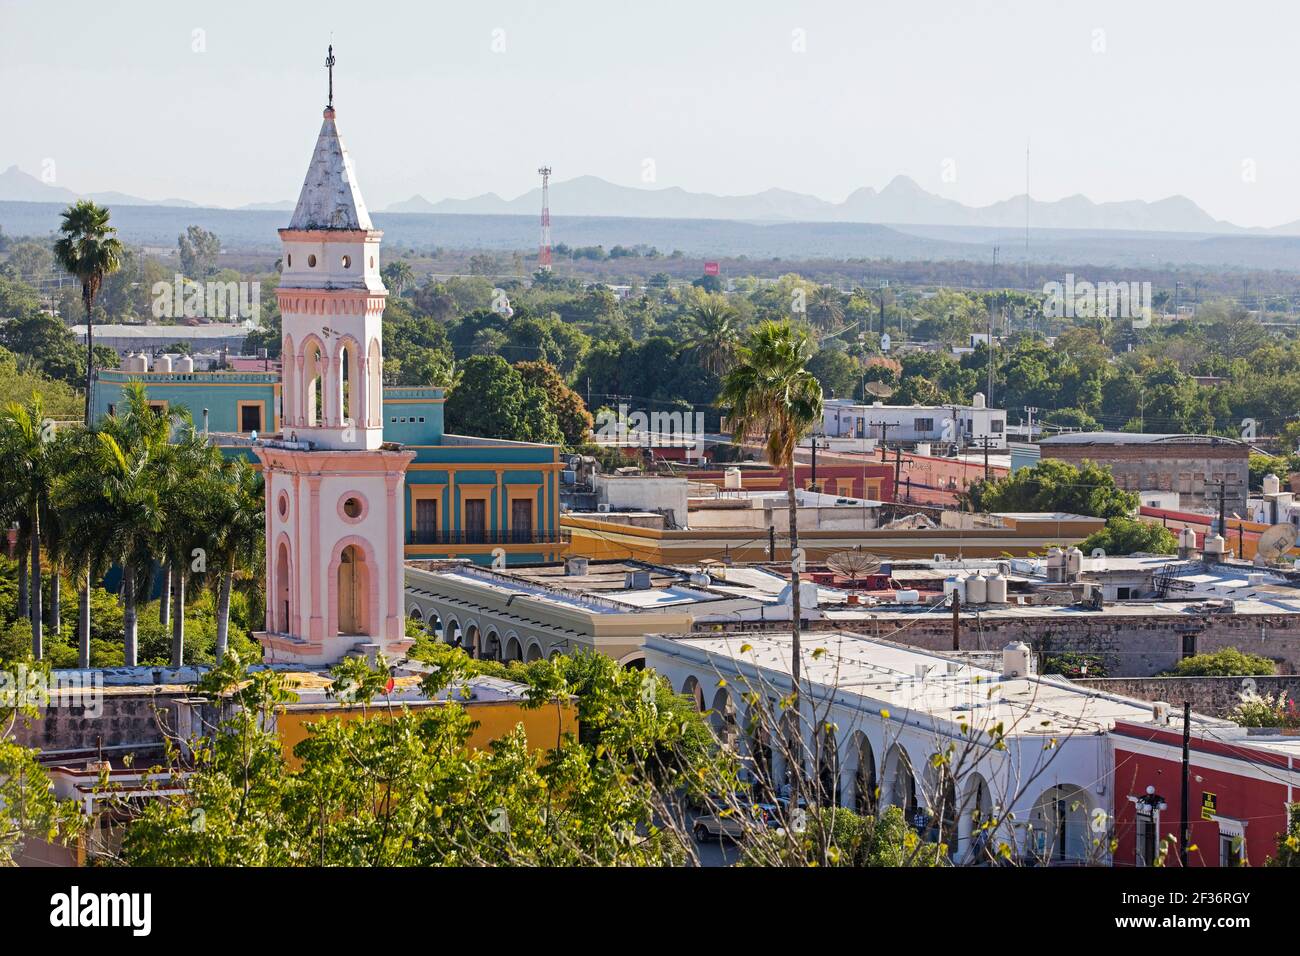 Vue sur la ville El Fuerte et l'église du Sacré coeur de Jésus / Iglesia del Sagrado Corazón de Jesús, Sinaloa, Mexique Banque D'Images